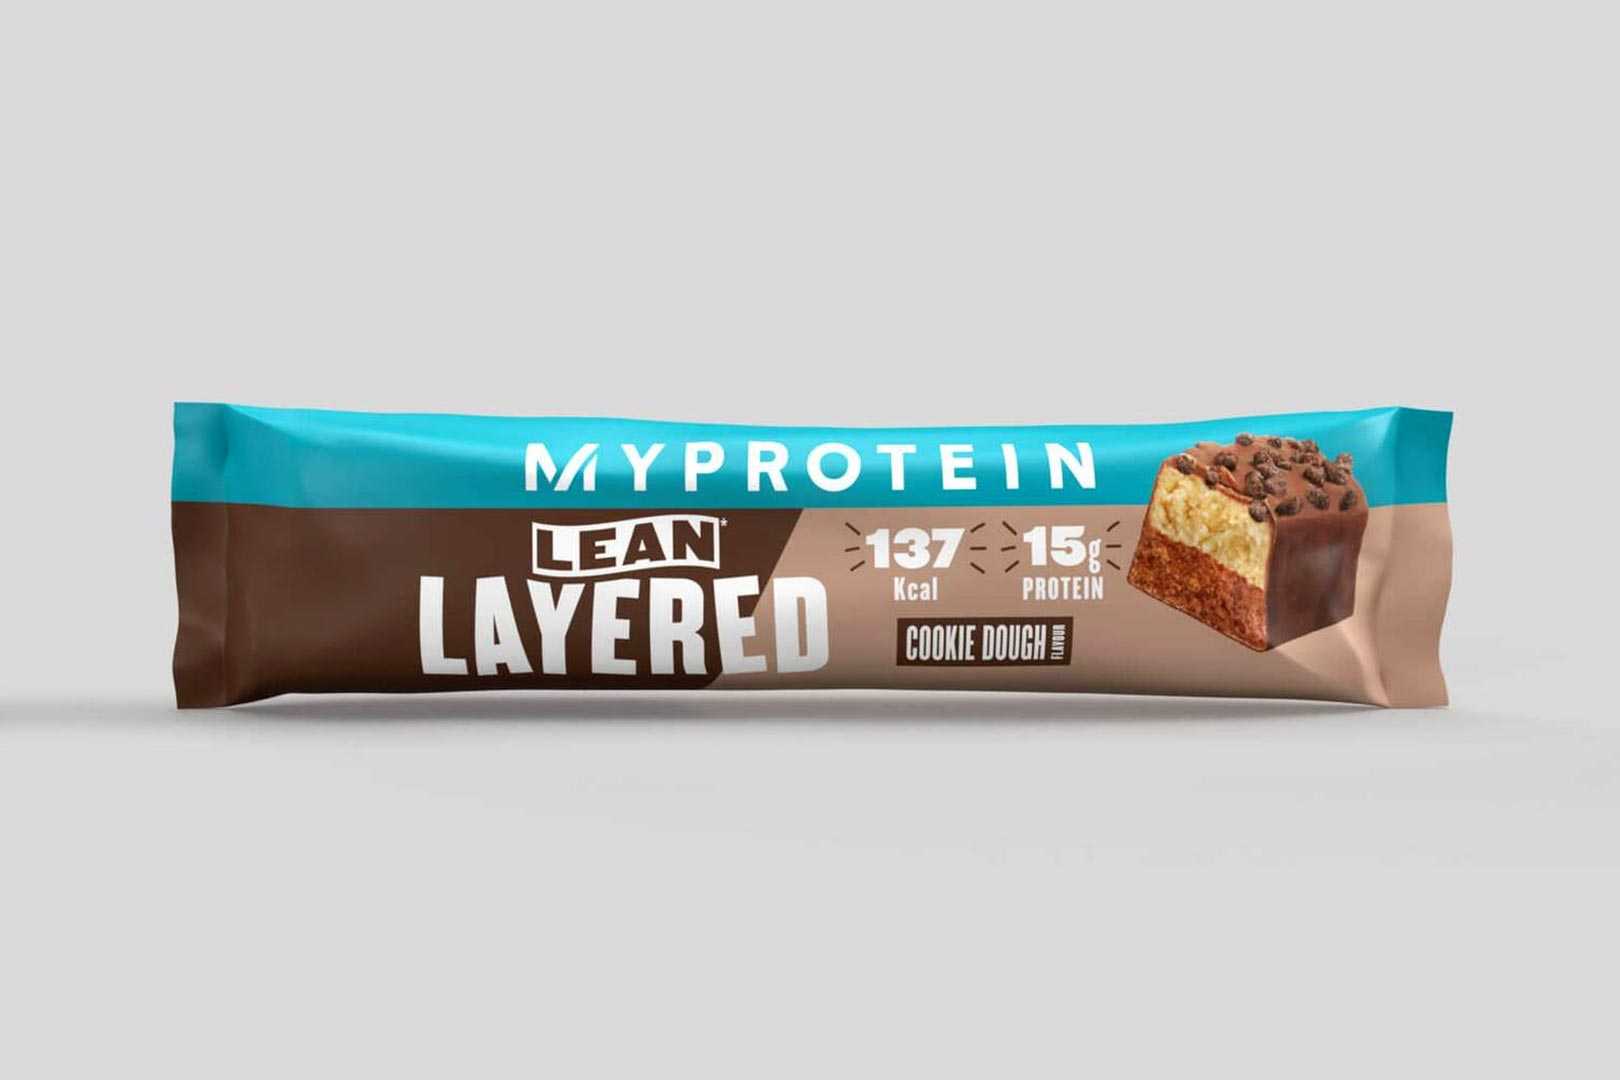 Myprotein Lean Layered Protein Bar